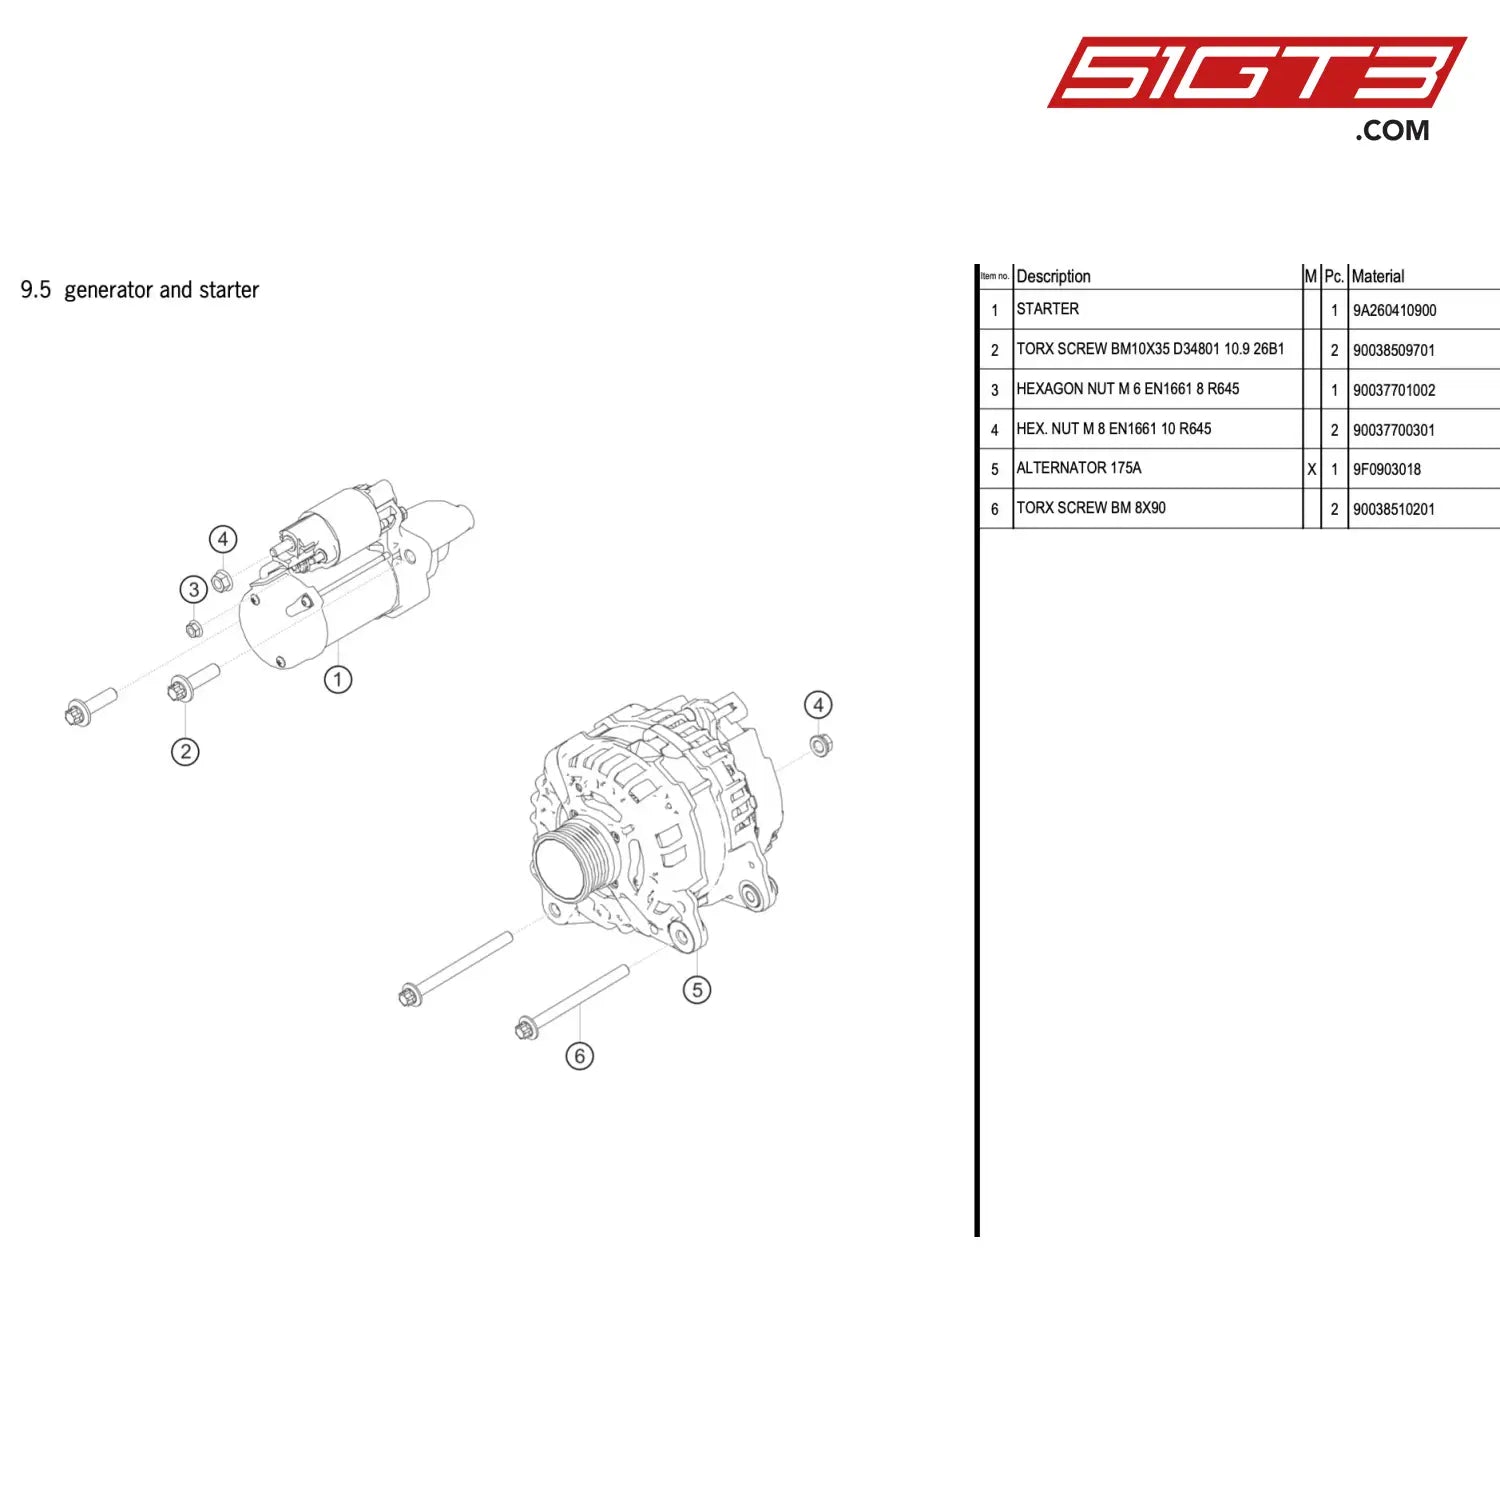 Starter - 9A260410900 [Porsche 911 Gt3 R Type 991 (Gen 2)] Generator And Starter